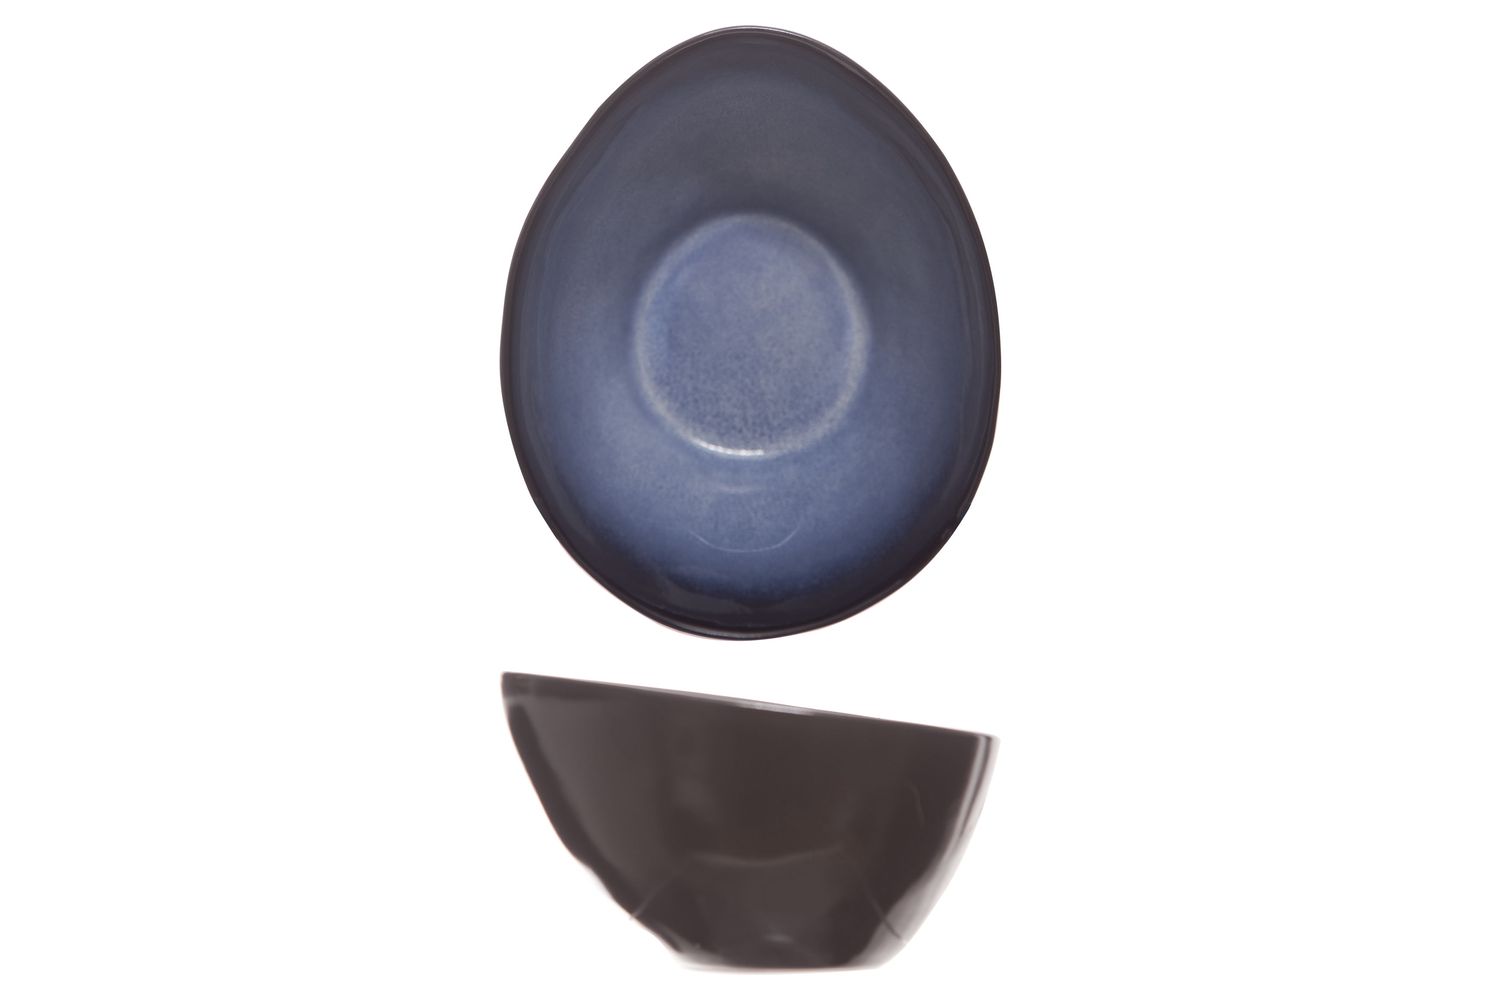 Nieuwjaar gezantschap Historicus Cosy & Trendy Bowls Sapphire 10 x 7.5 x 6 cm | Buy now at Cookinglife